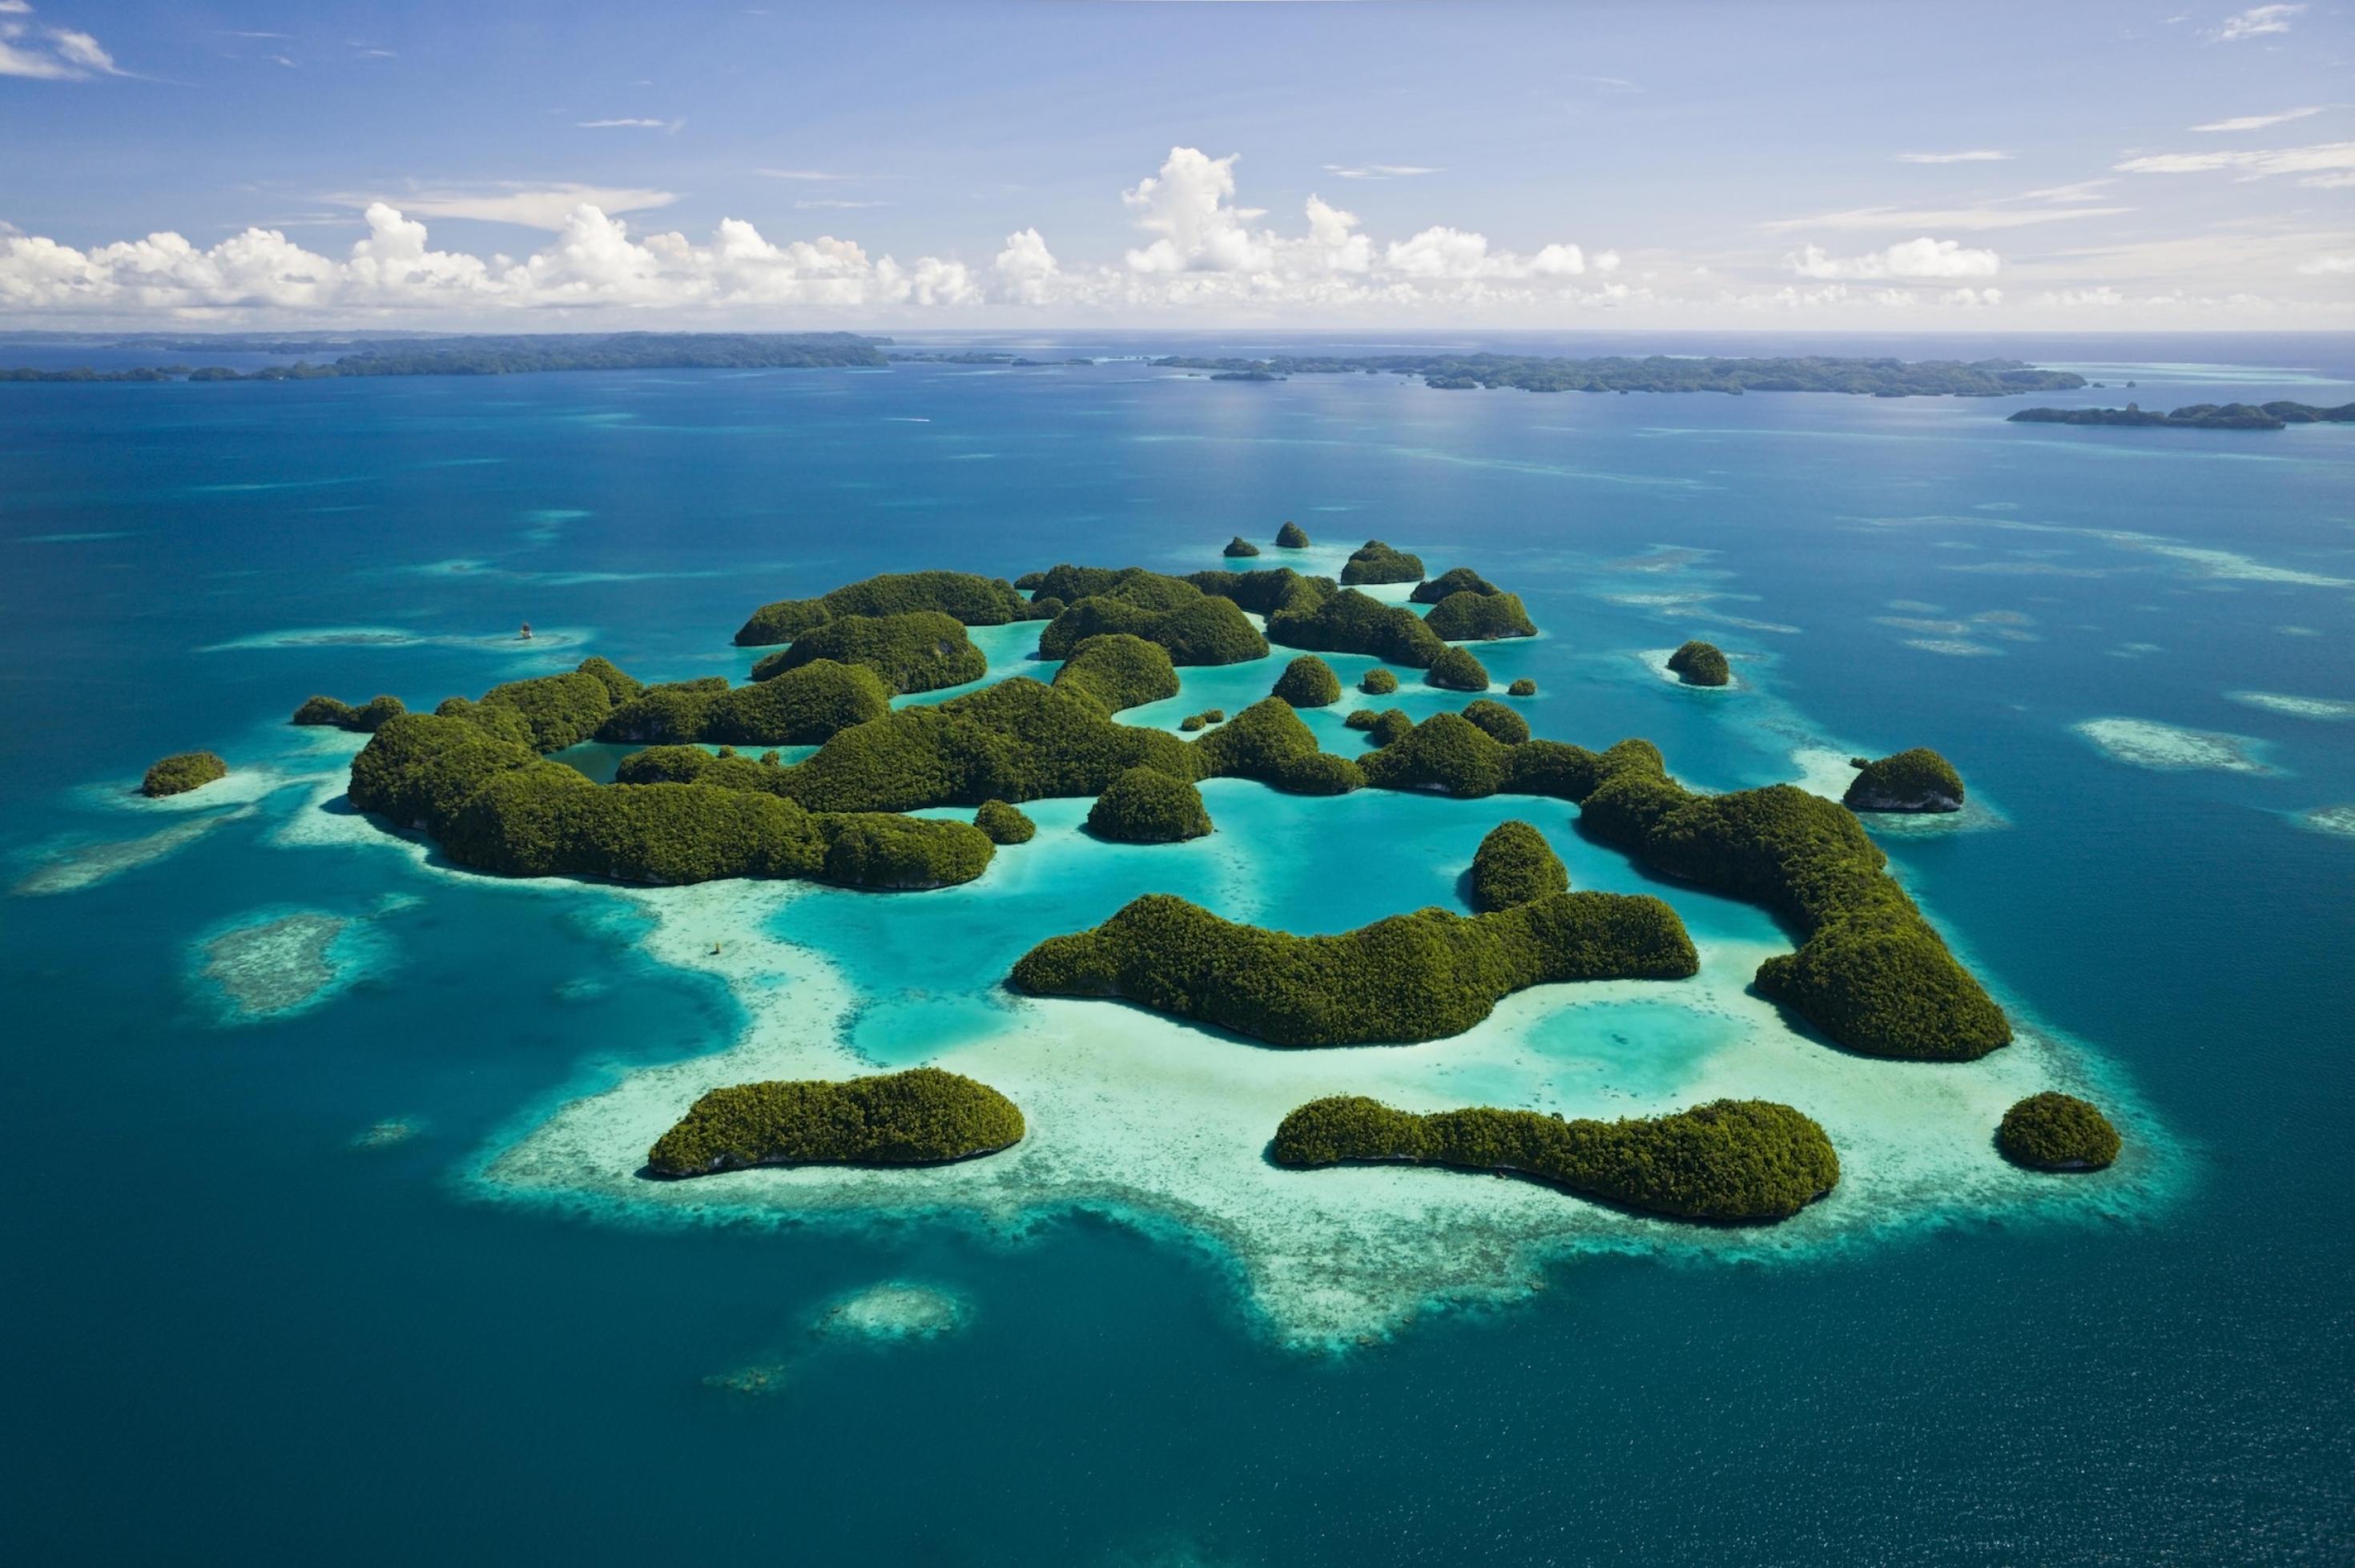 Zu sehen ist ein Luftbild von 70 kleinen Inseln des Pazfikarchipels Palau, umgeben von azurblauem Meer. 78 Prozent der Ausschließlichen Wirtschaftszone stehen unter strengem Schutz